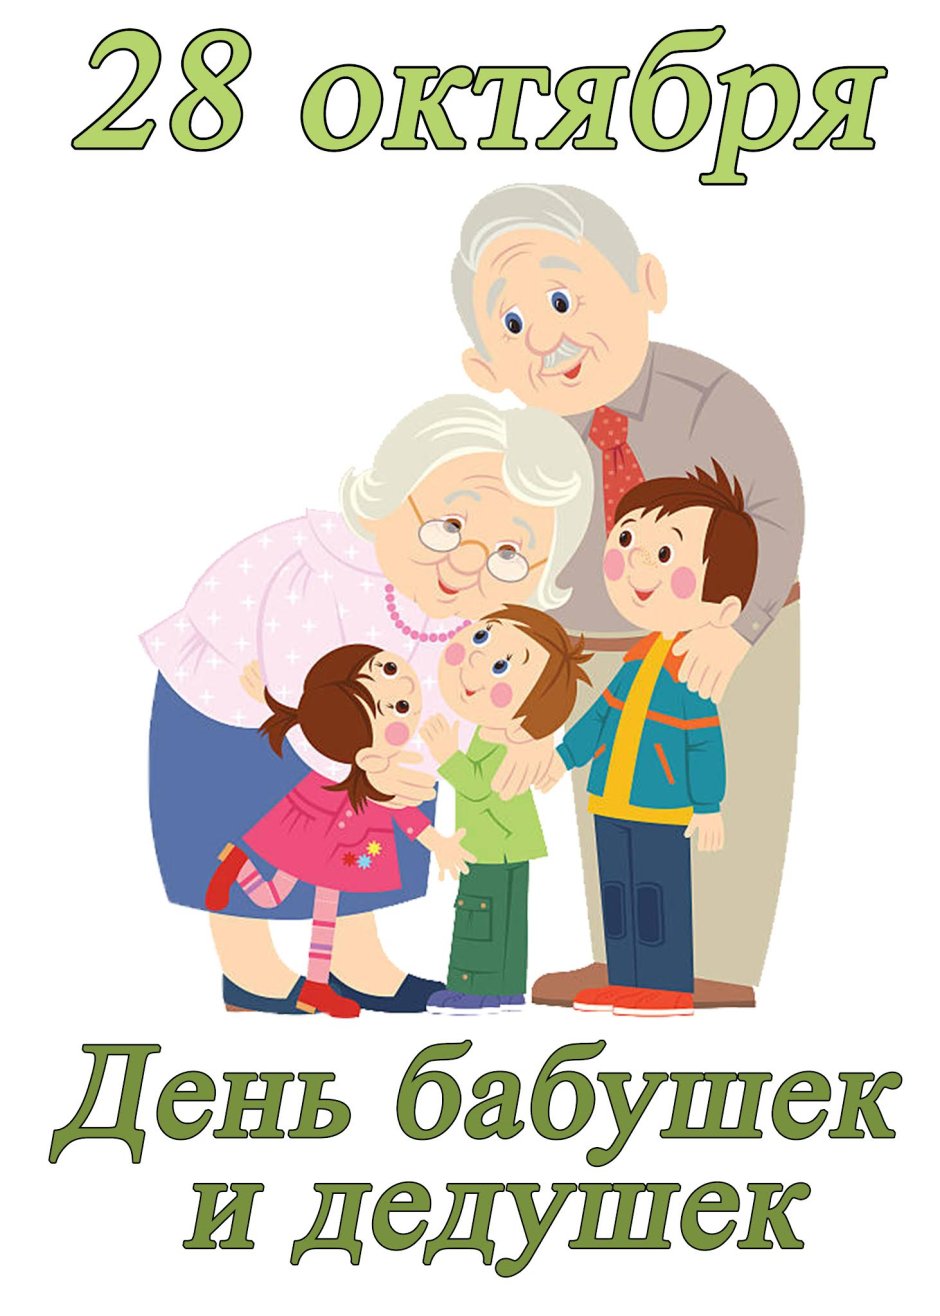 С праздником бабушек и дедушек